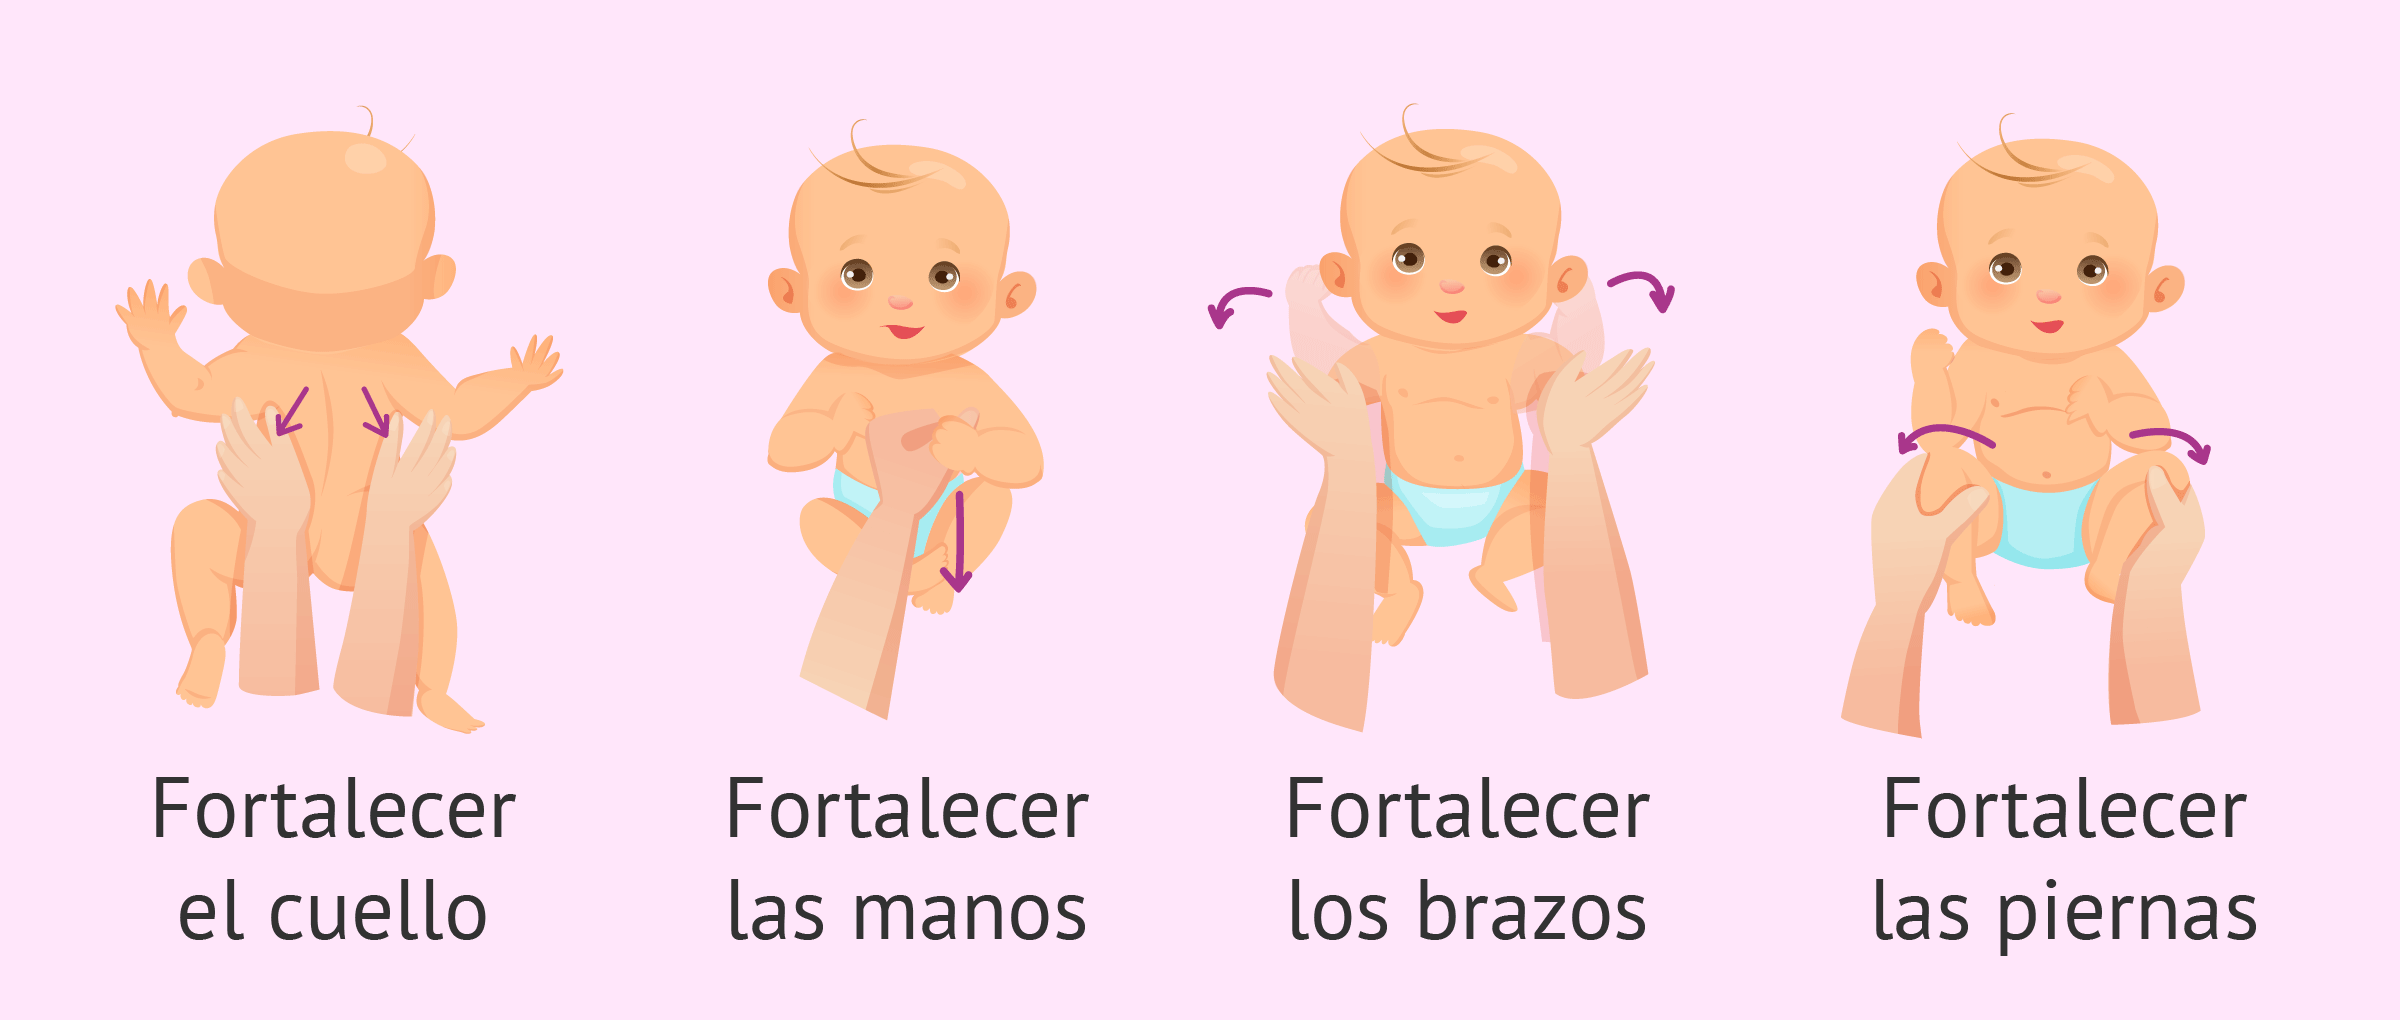 Ejercicios de estimulación para bebés